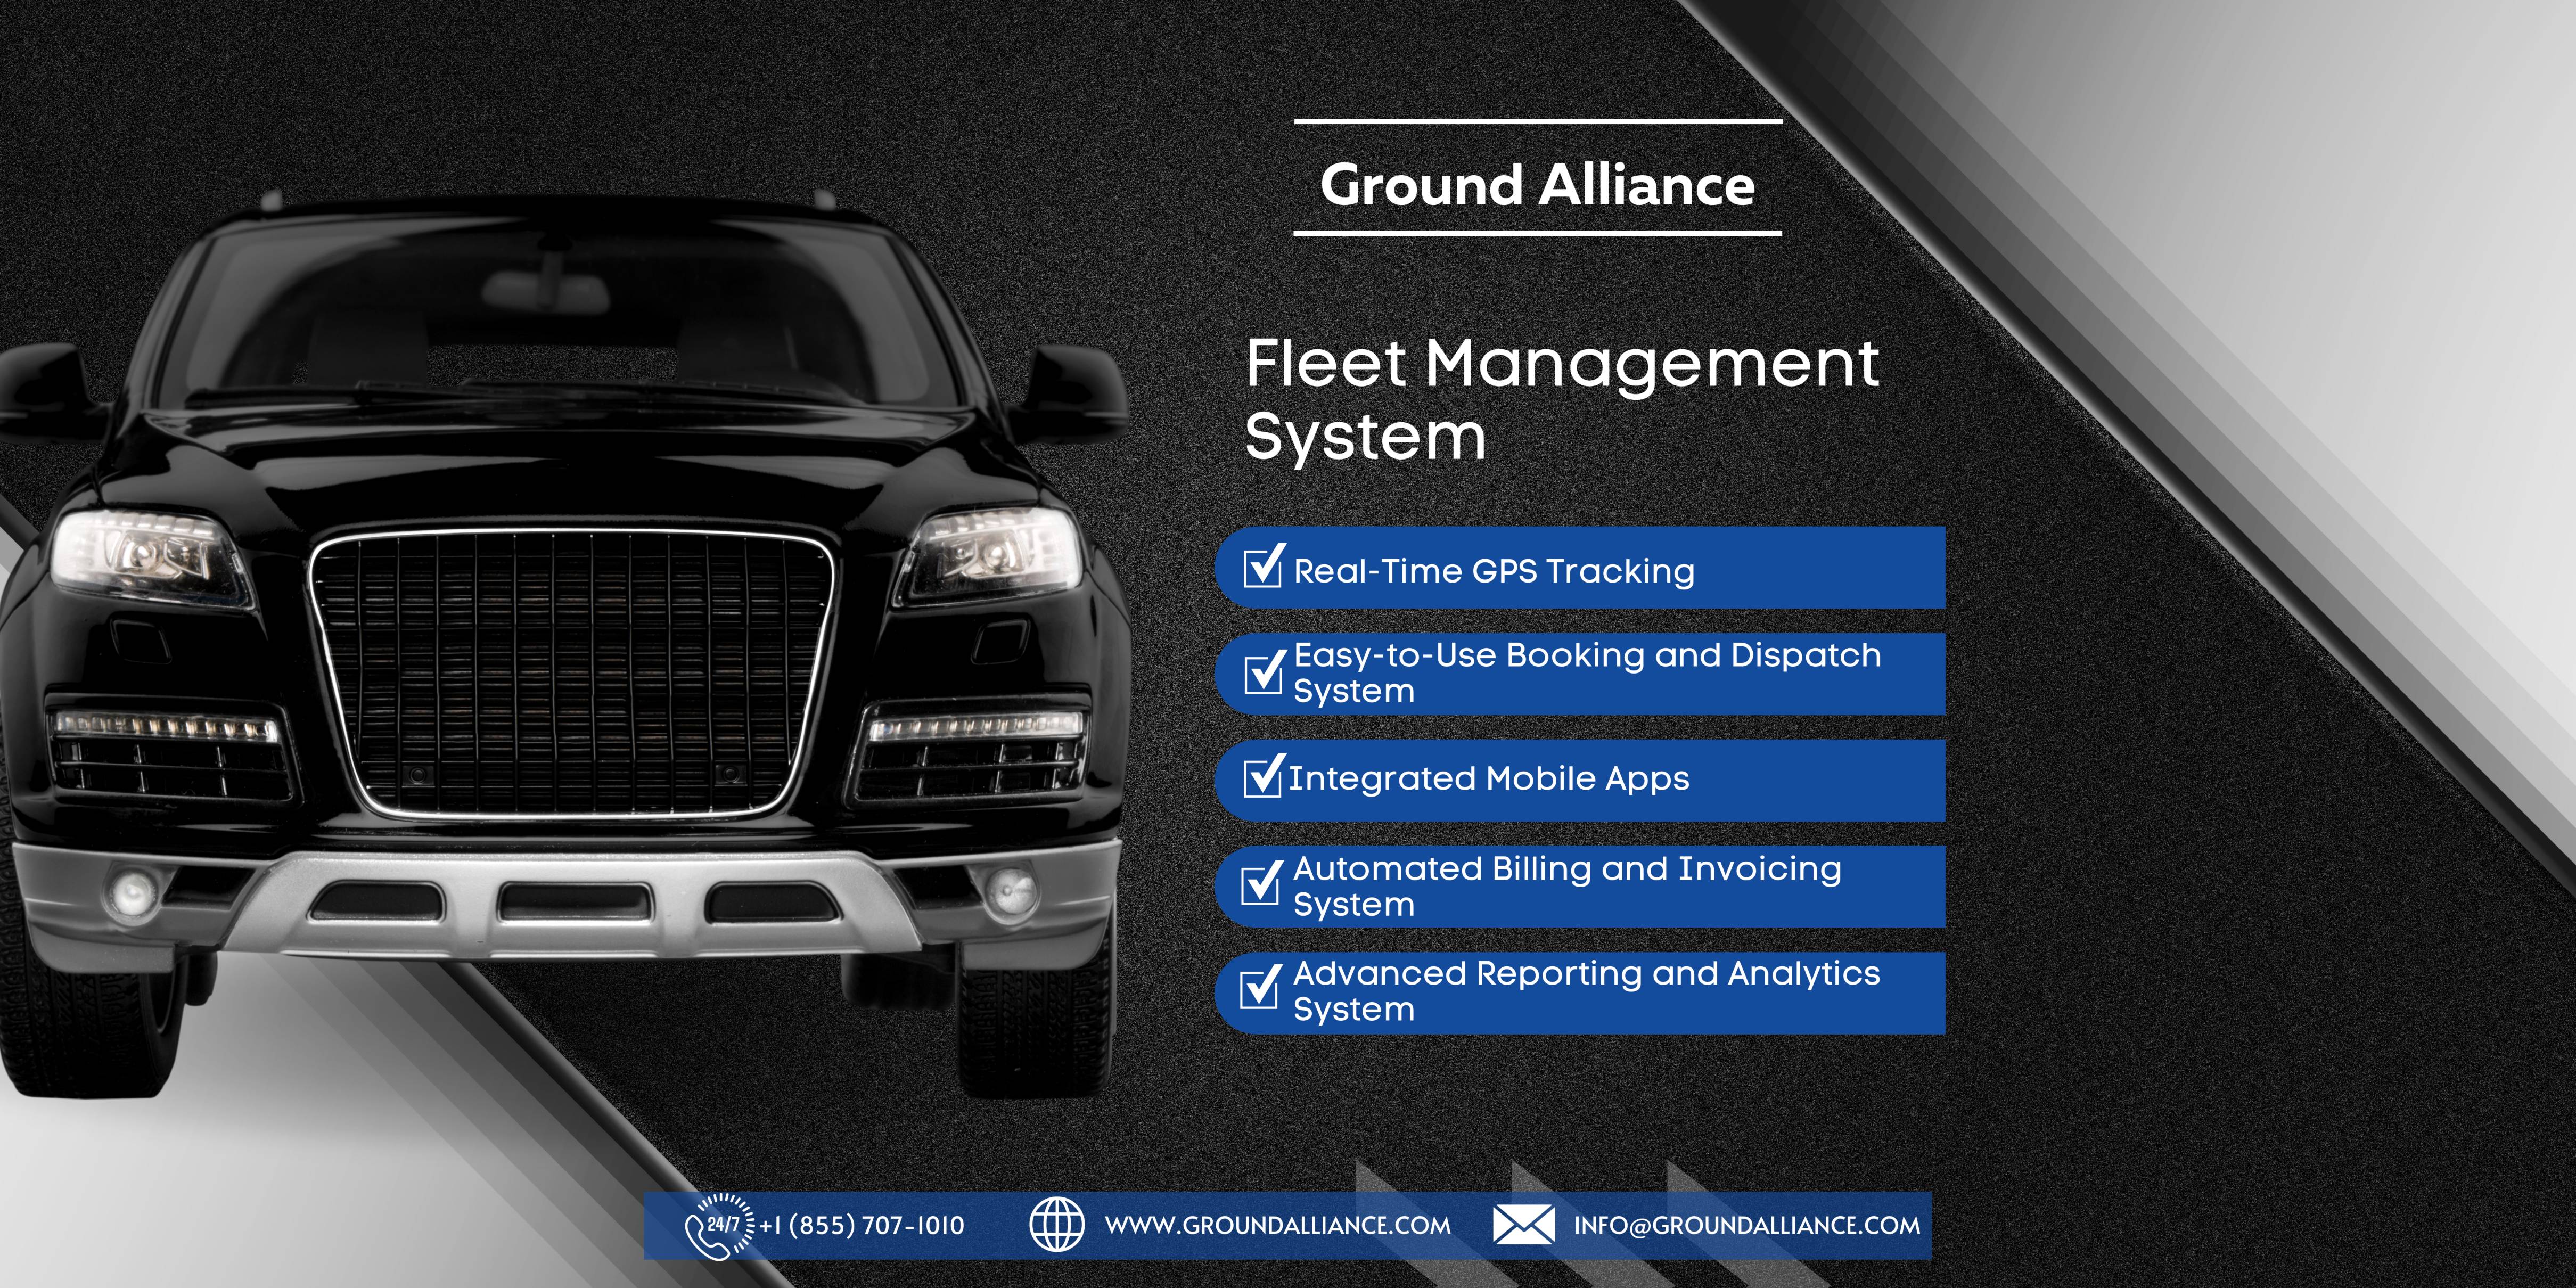 Fleet Management System - Ground Alliance